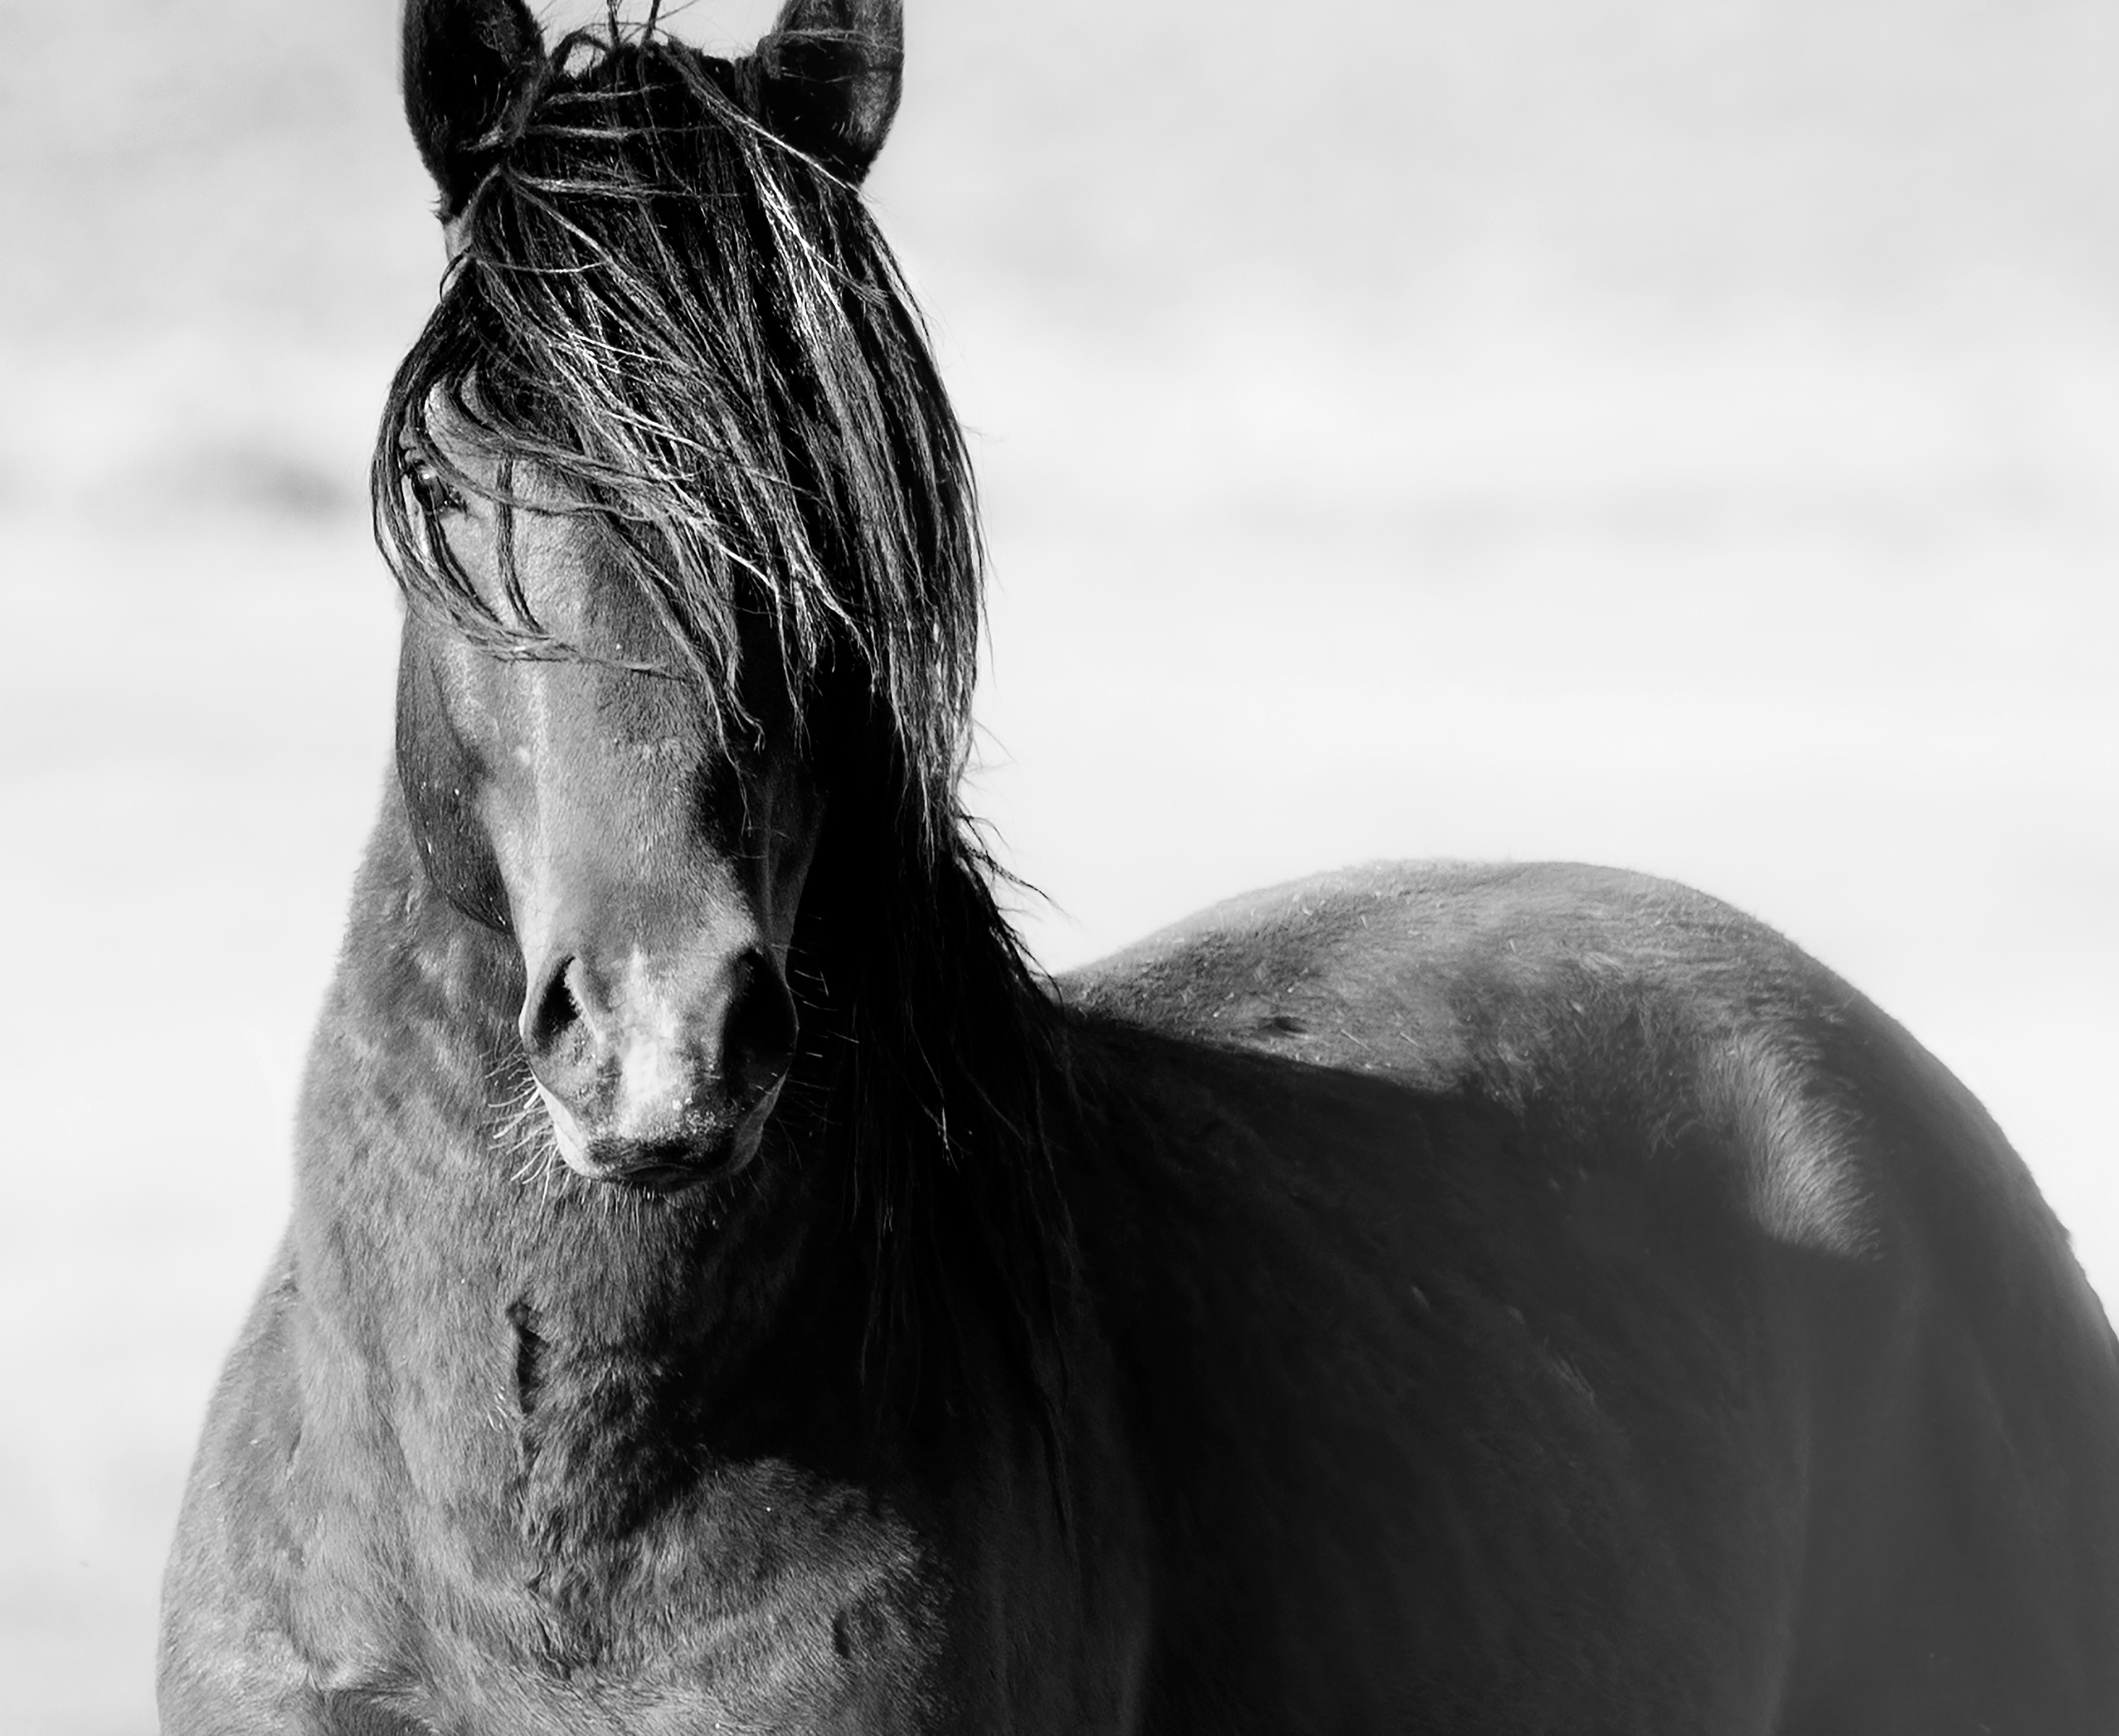 Black and White Photograph Shane Russeck - Photographie en noir et blanc « Wild Horse » chantée par un cheval sauvage, 40x60